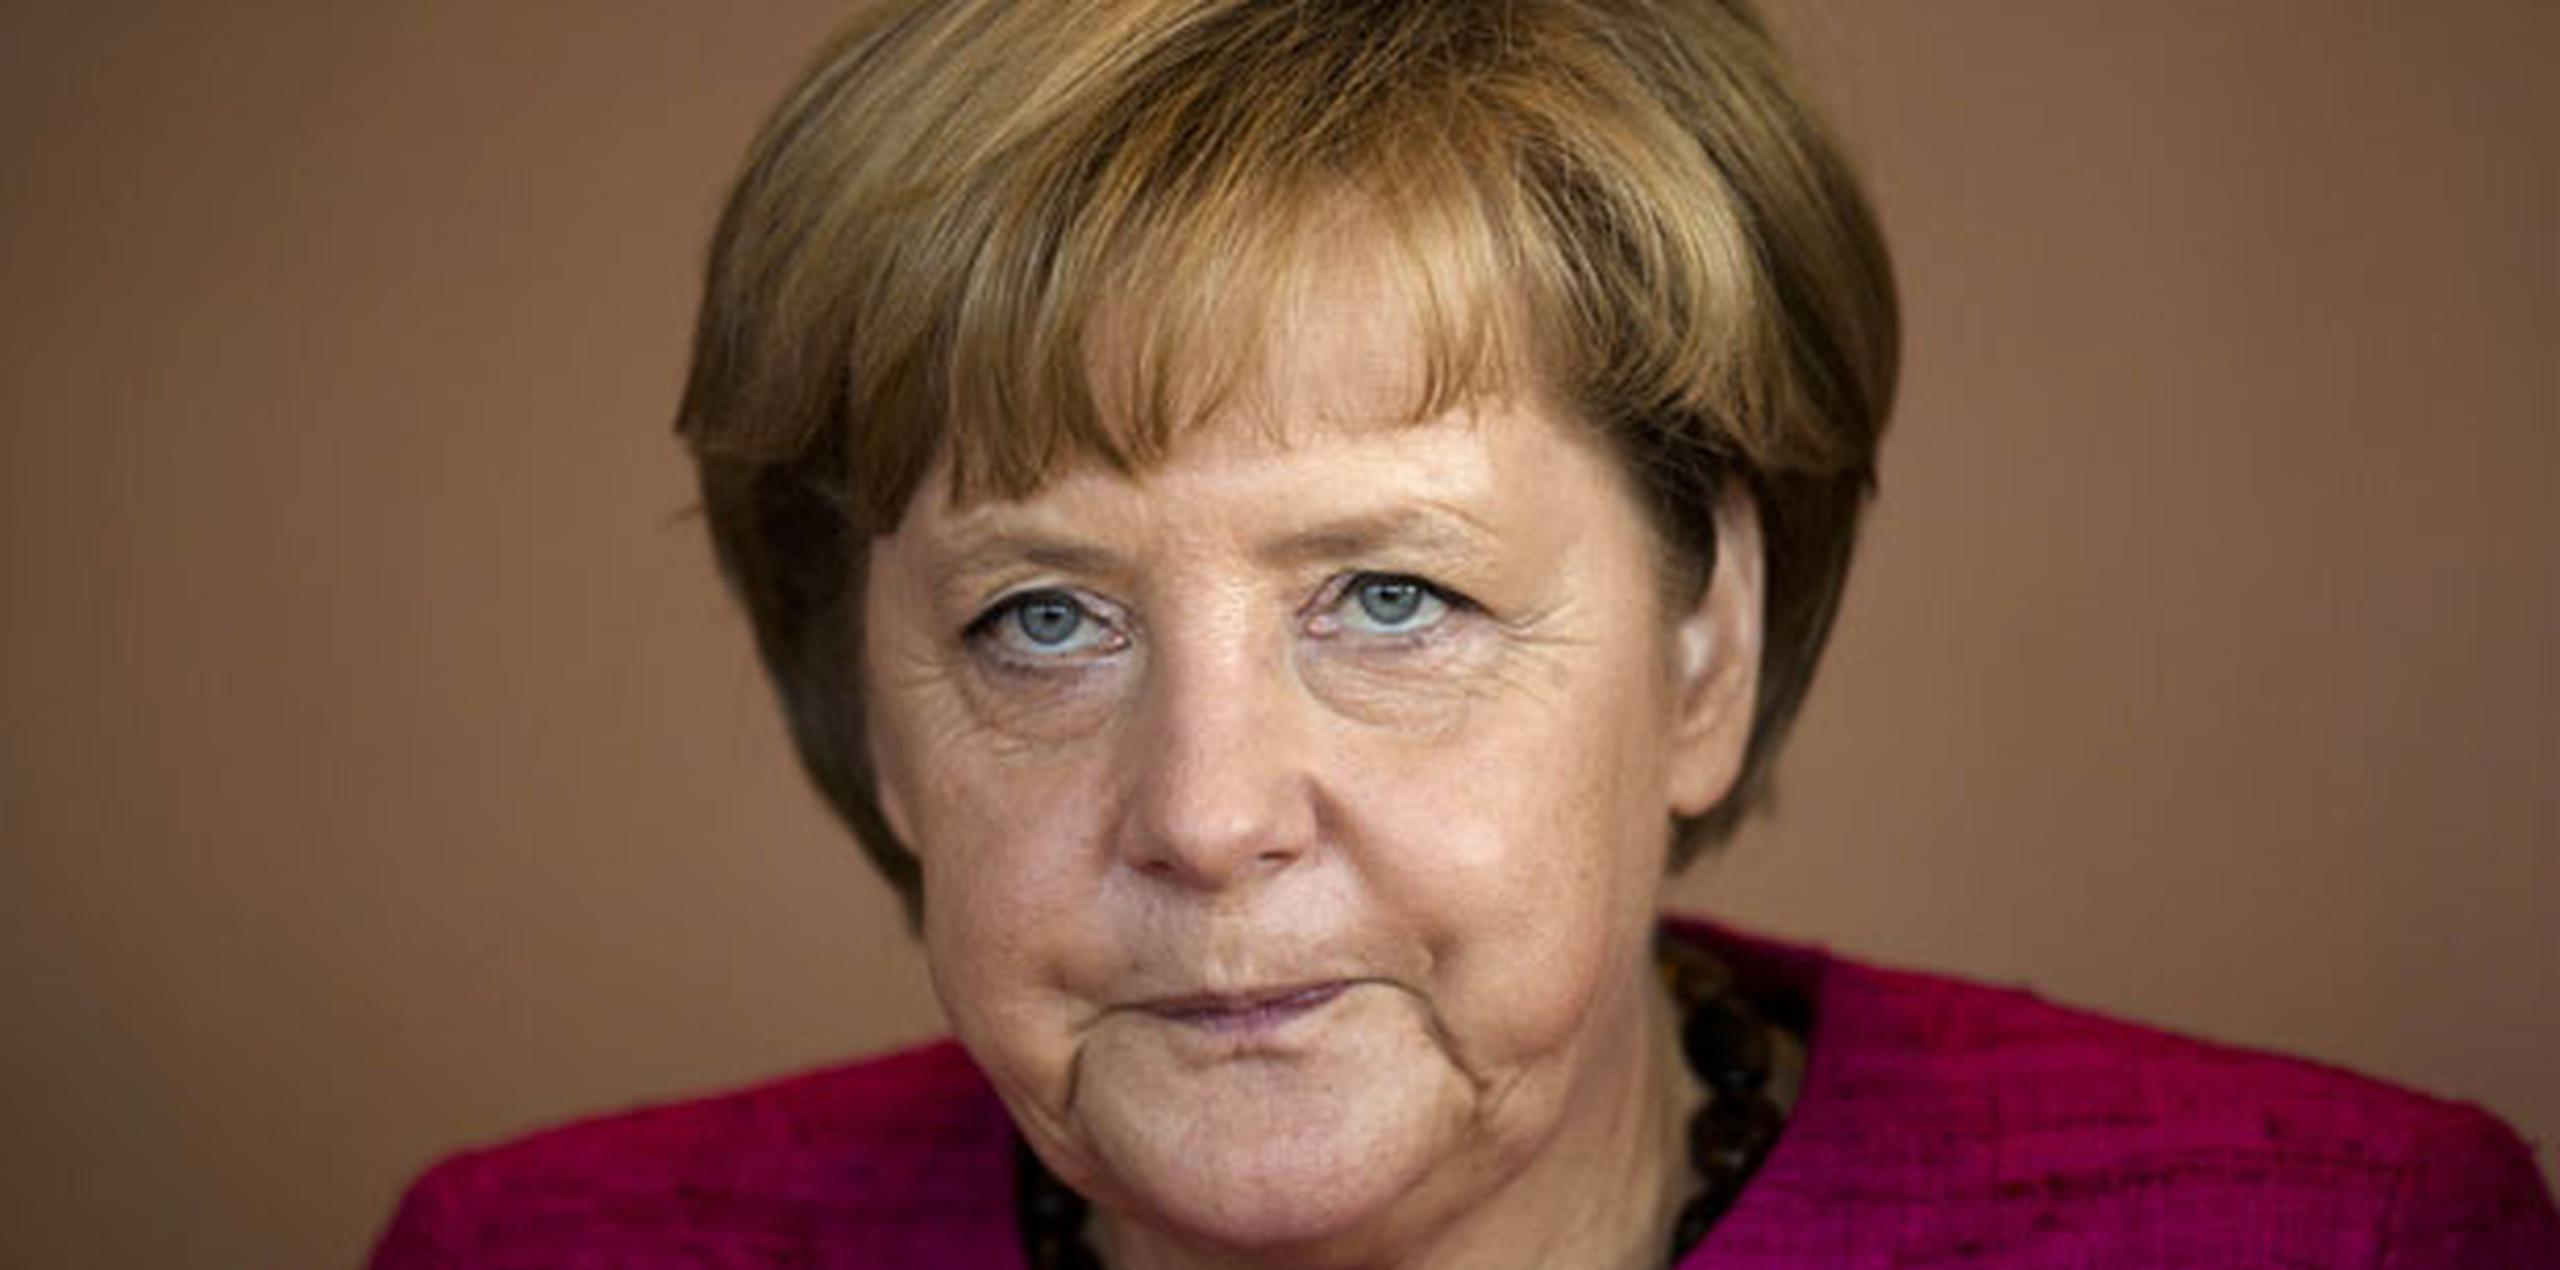 Merkel abogó por que las relaciones futuras con Reino Unido sean "estrechas" y amistosas, y aseguró que en las negociaciones defenderá los intereses de los ciudadanos alemanes y de la industria nacional. (Archivo)